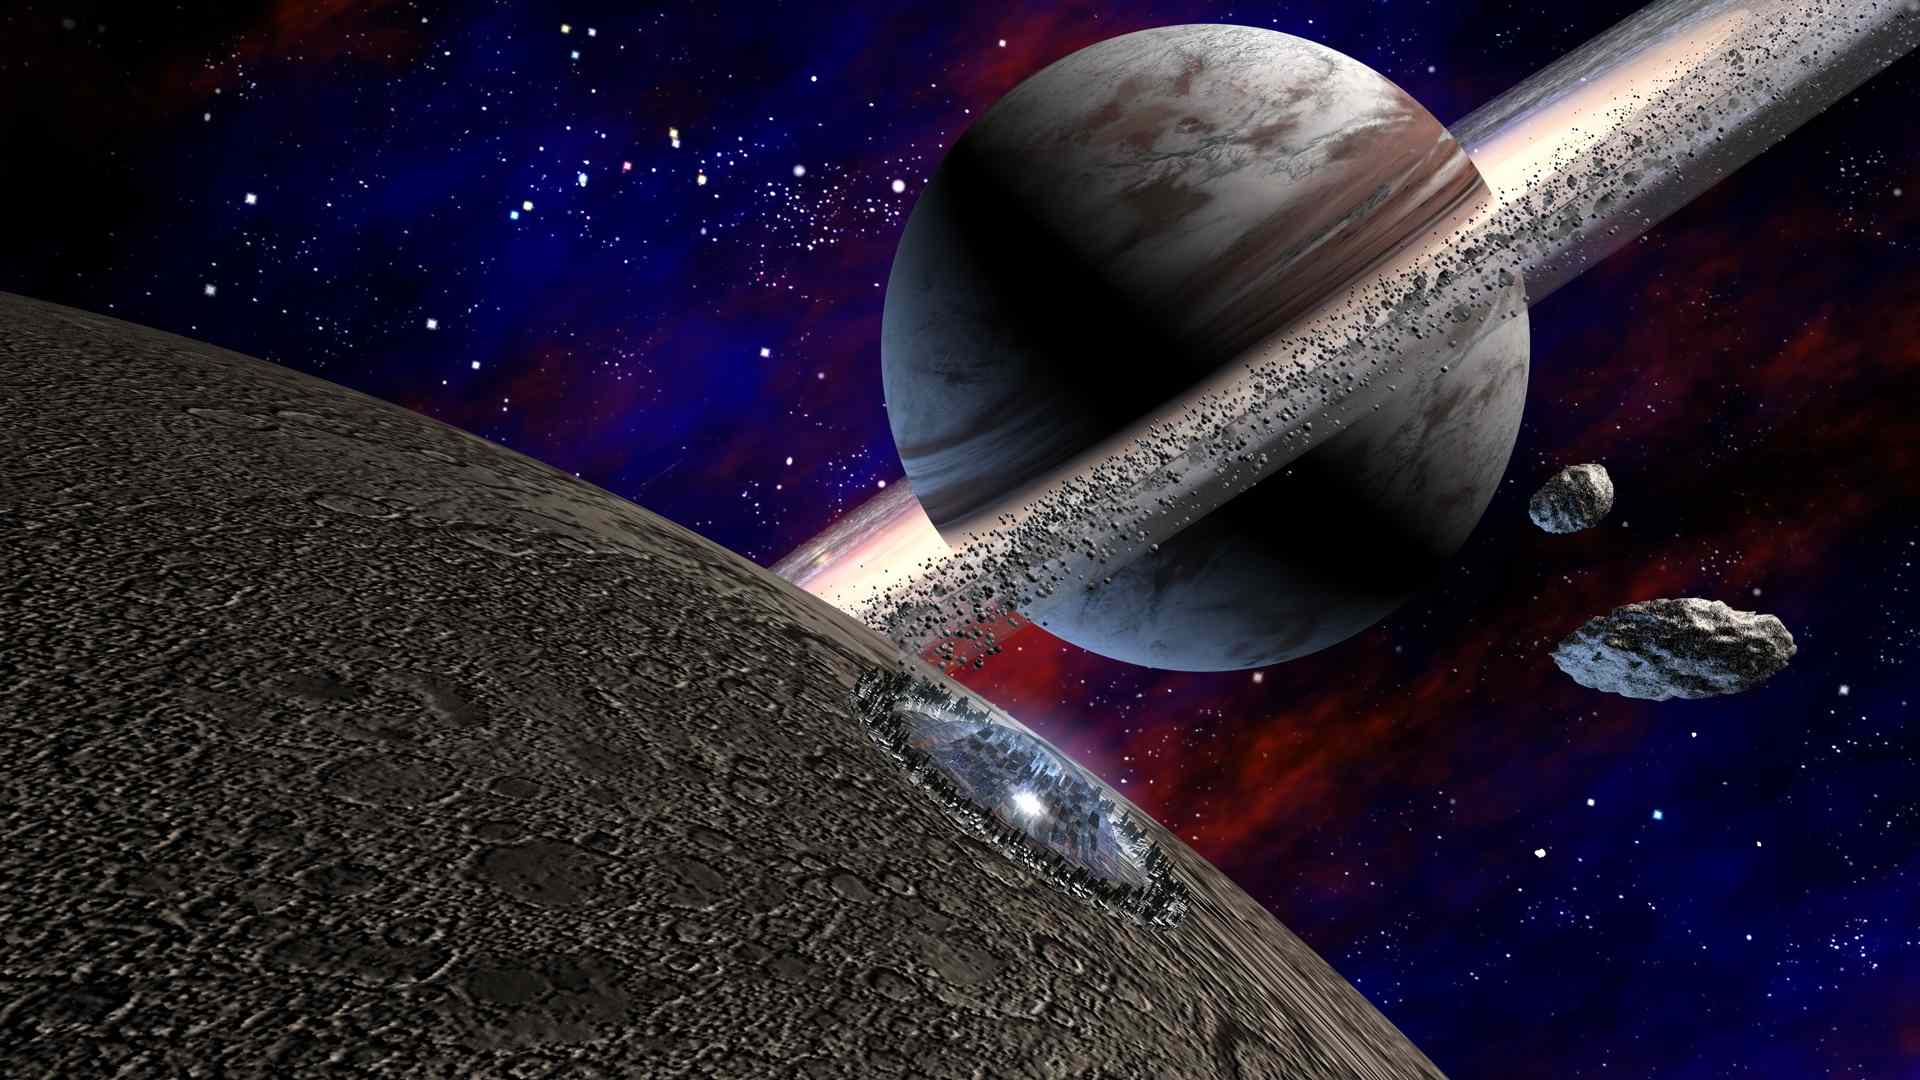 Oktober 3430 alter Zeitrechnung:

Ein schwarzer Ellipsoidraumer mit Magnetfeldantrieb ist Richtung Saturn unterwegs. 
(C) Raimund Peter